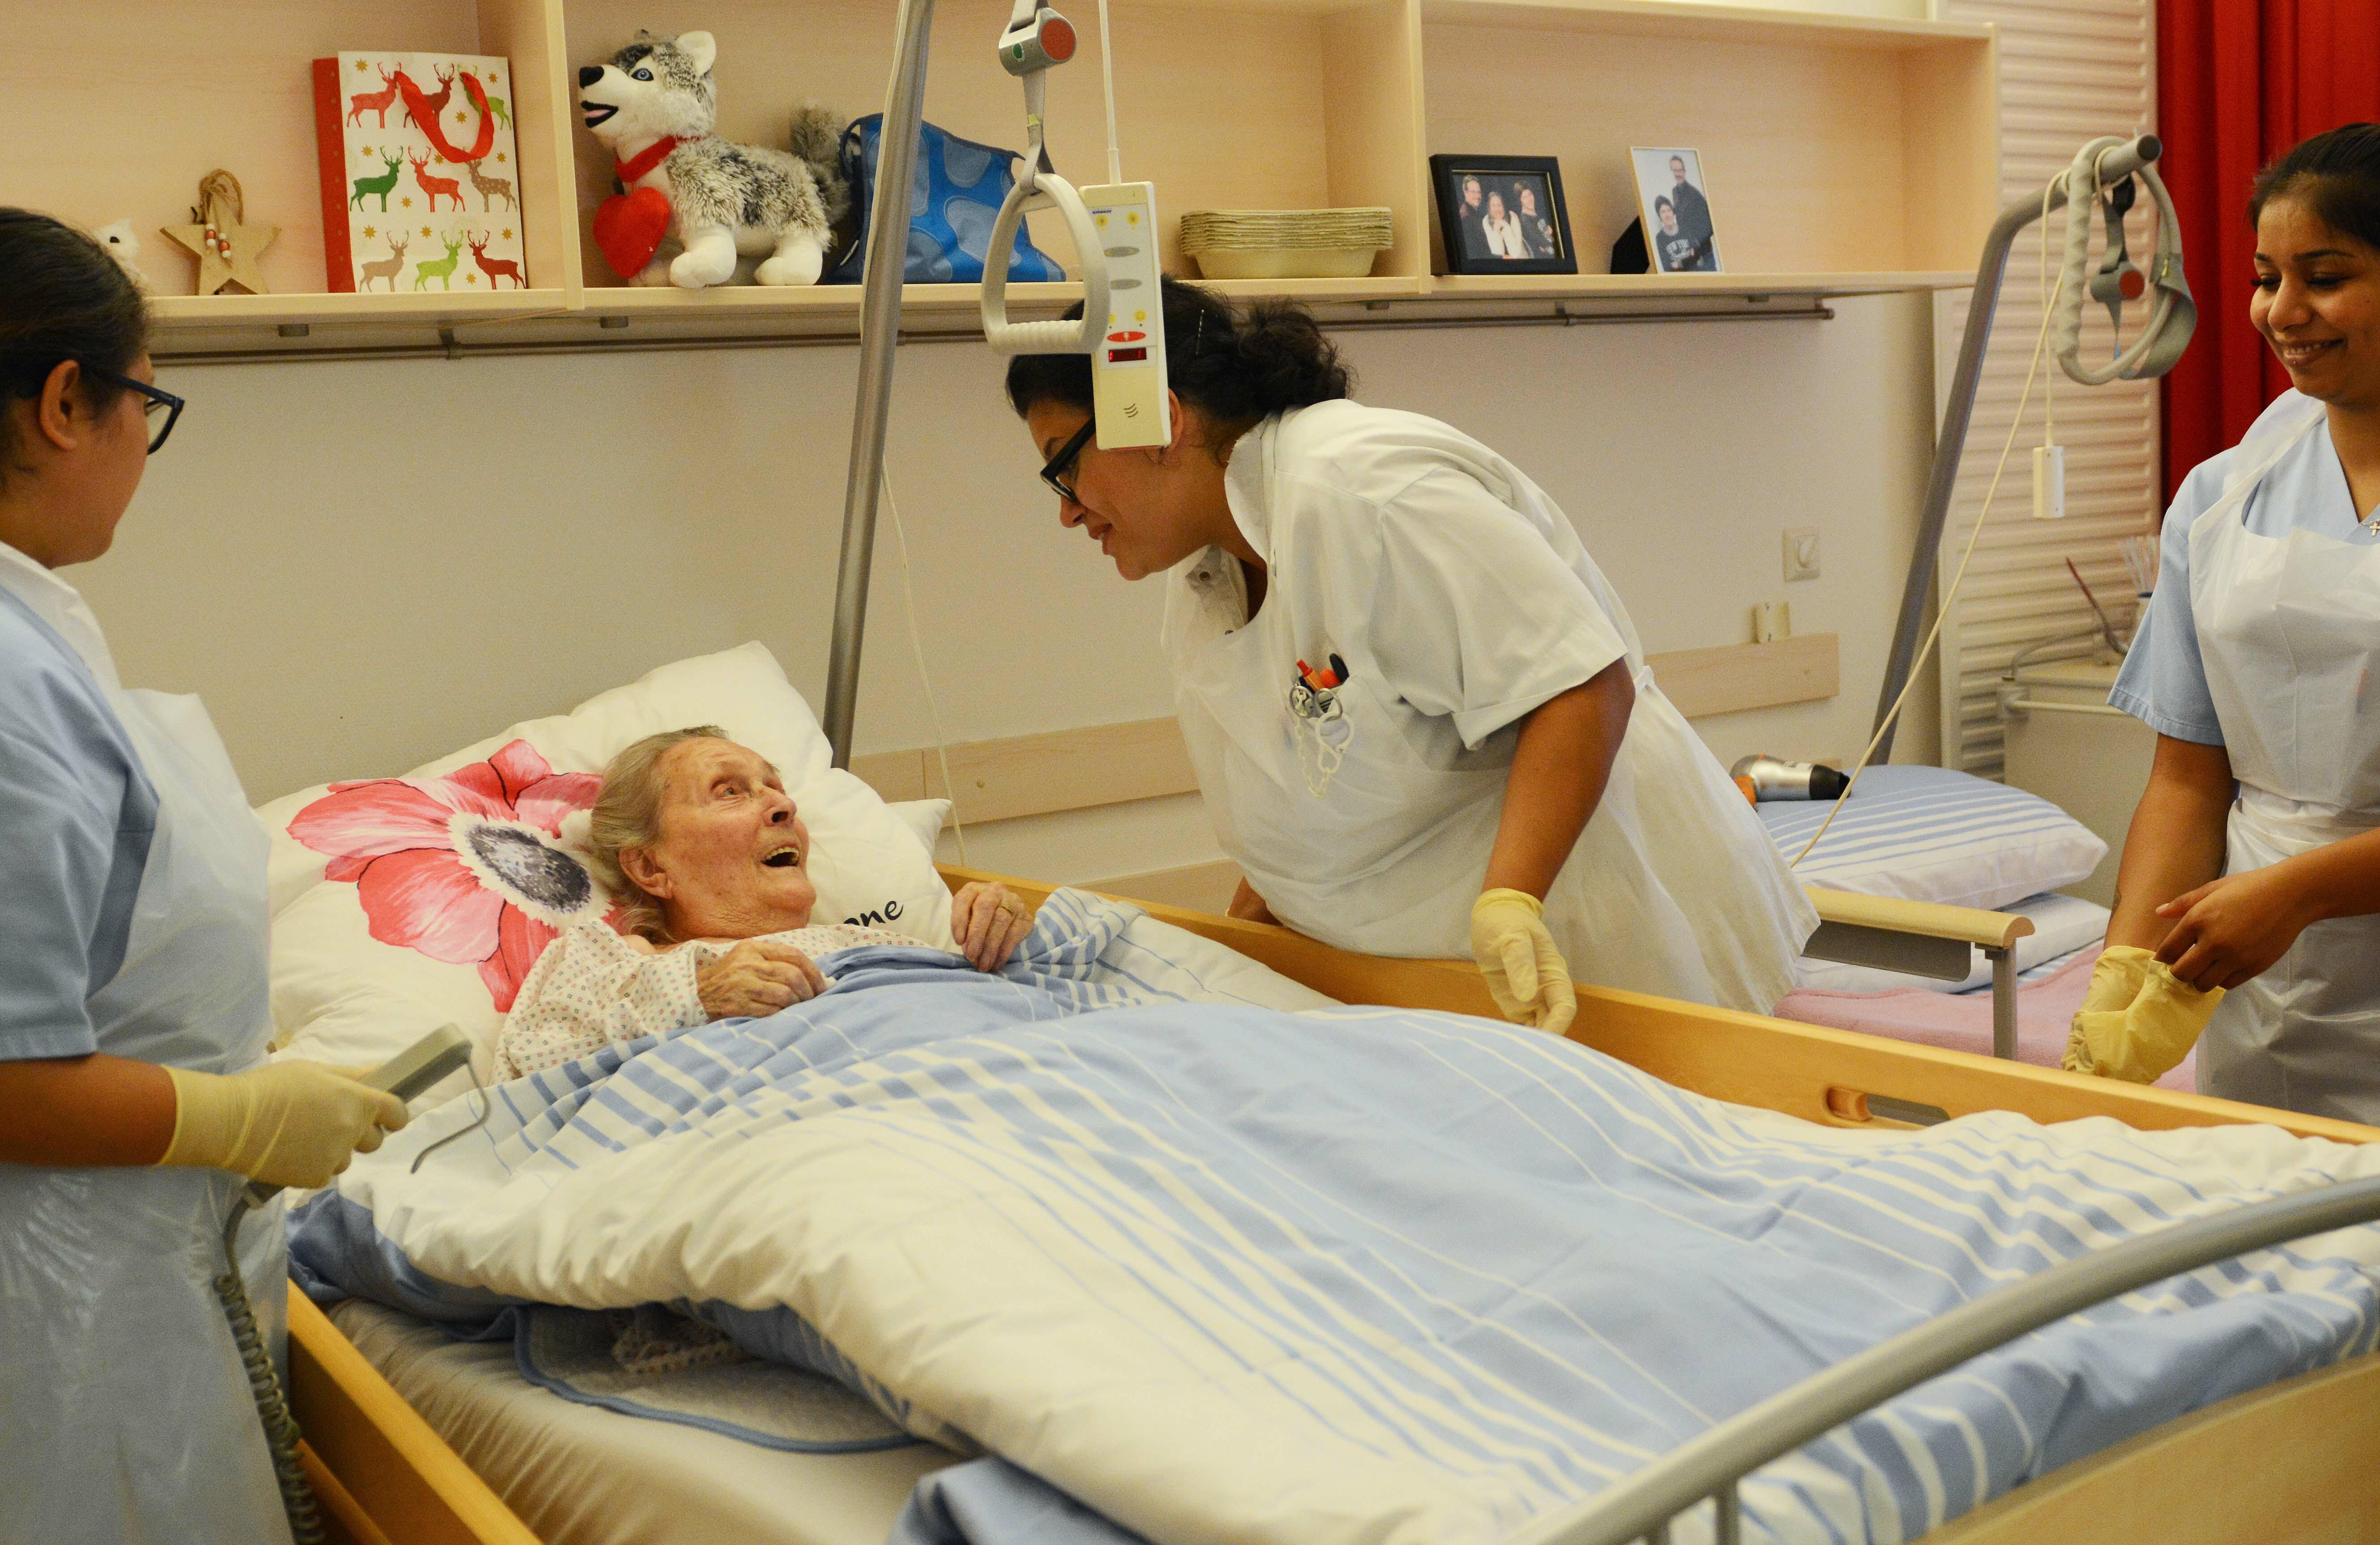 3 Pflegekräfte kümmern sich um eine alte Dame, die in einem Pflegebett liegt.